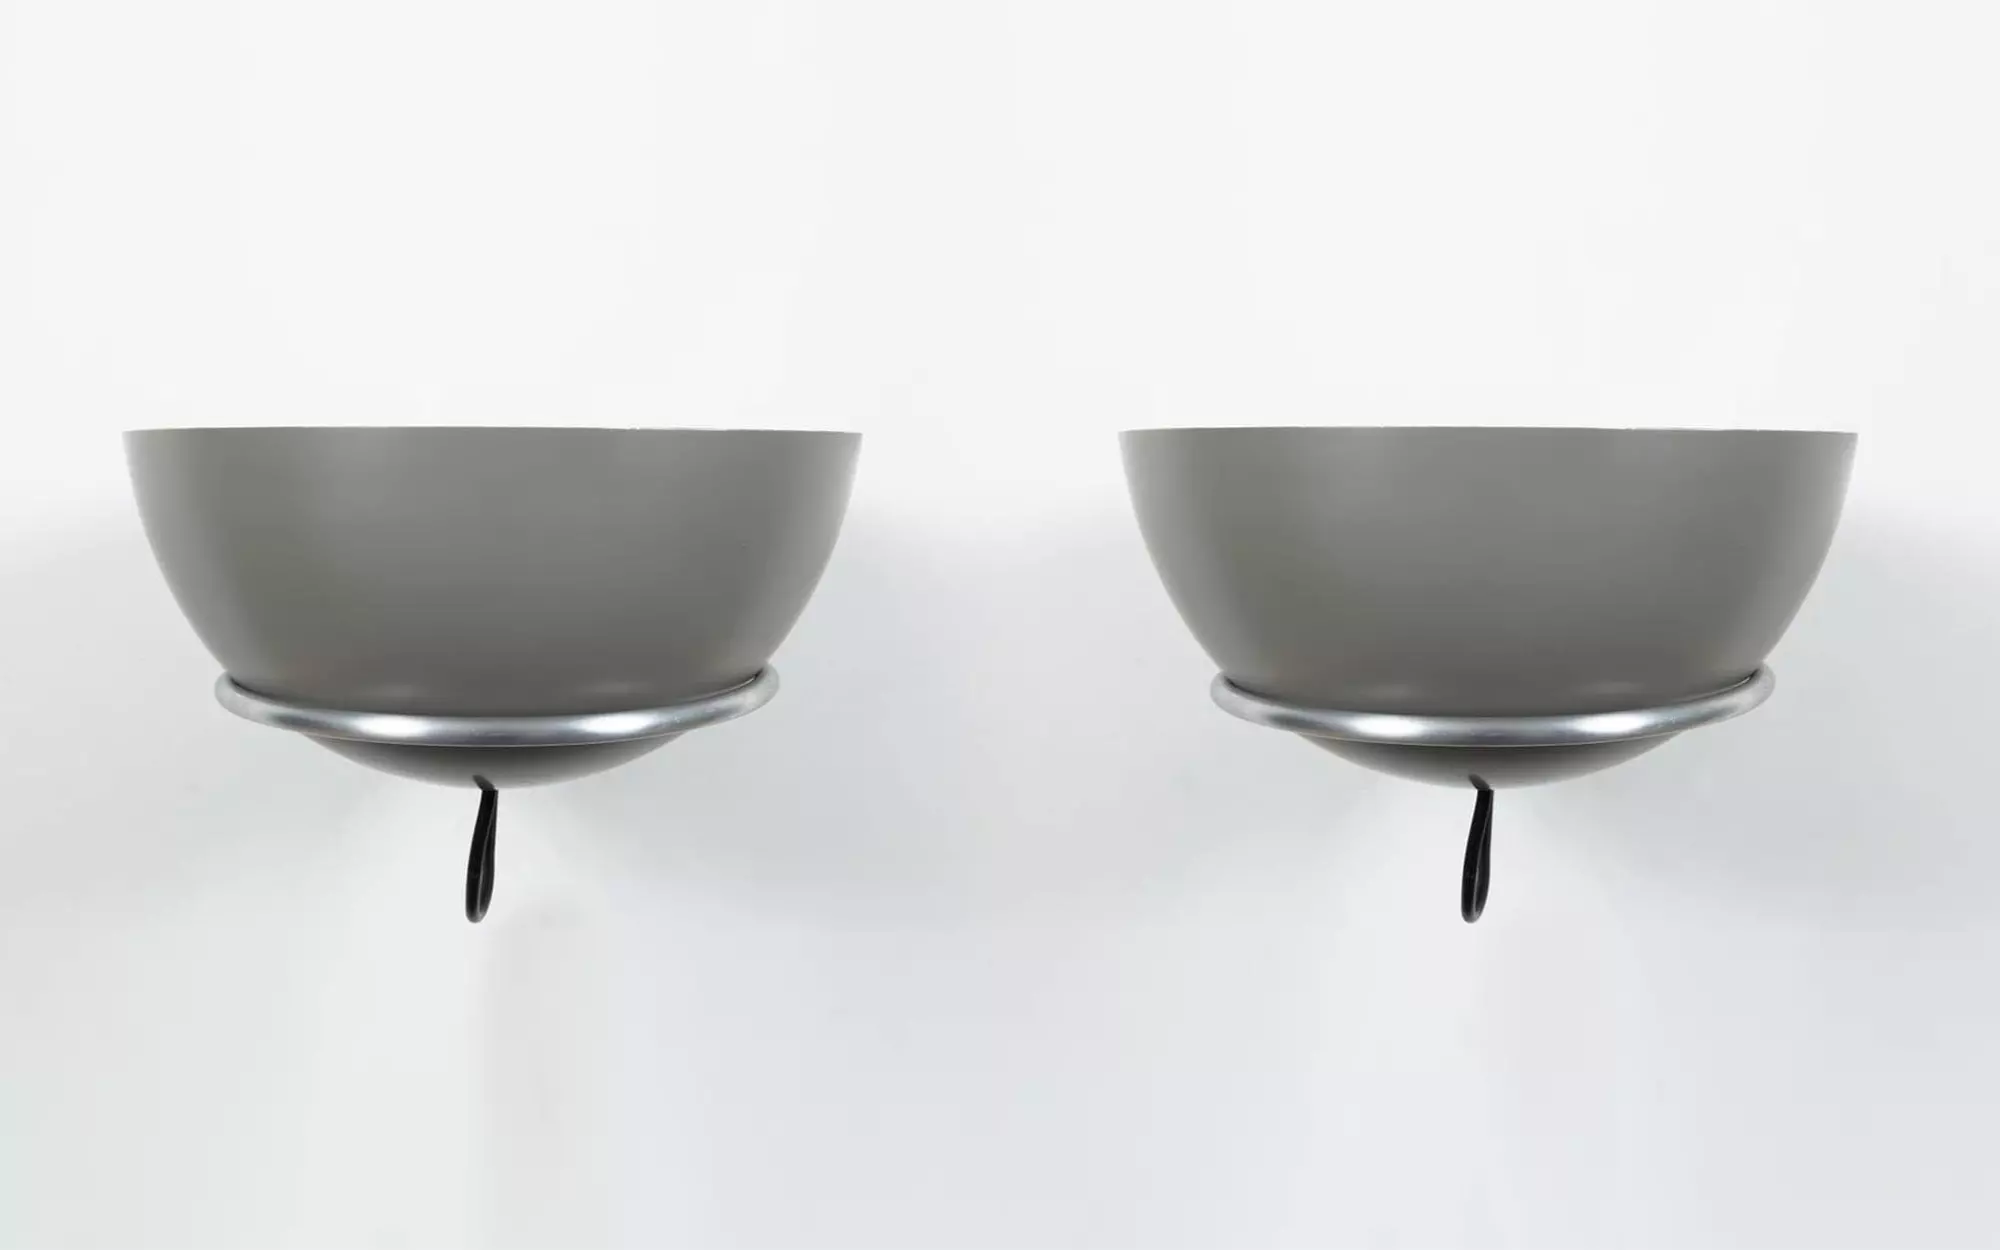 2/2 - Gino Sarfatti - Pendant light - Galerie kreo